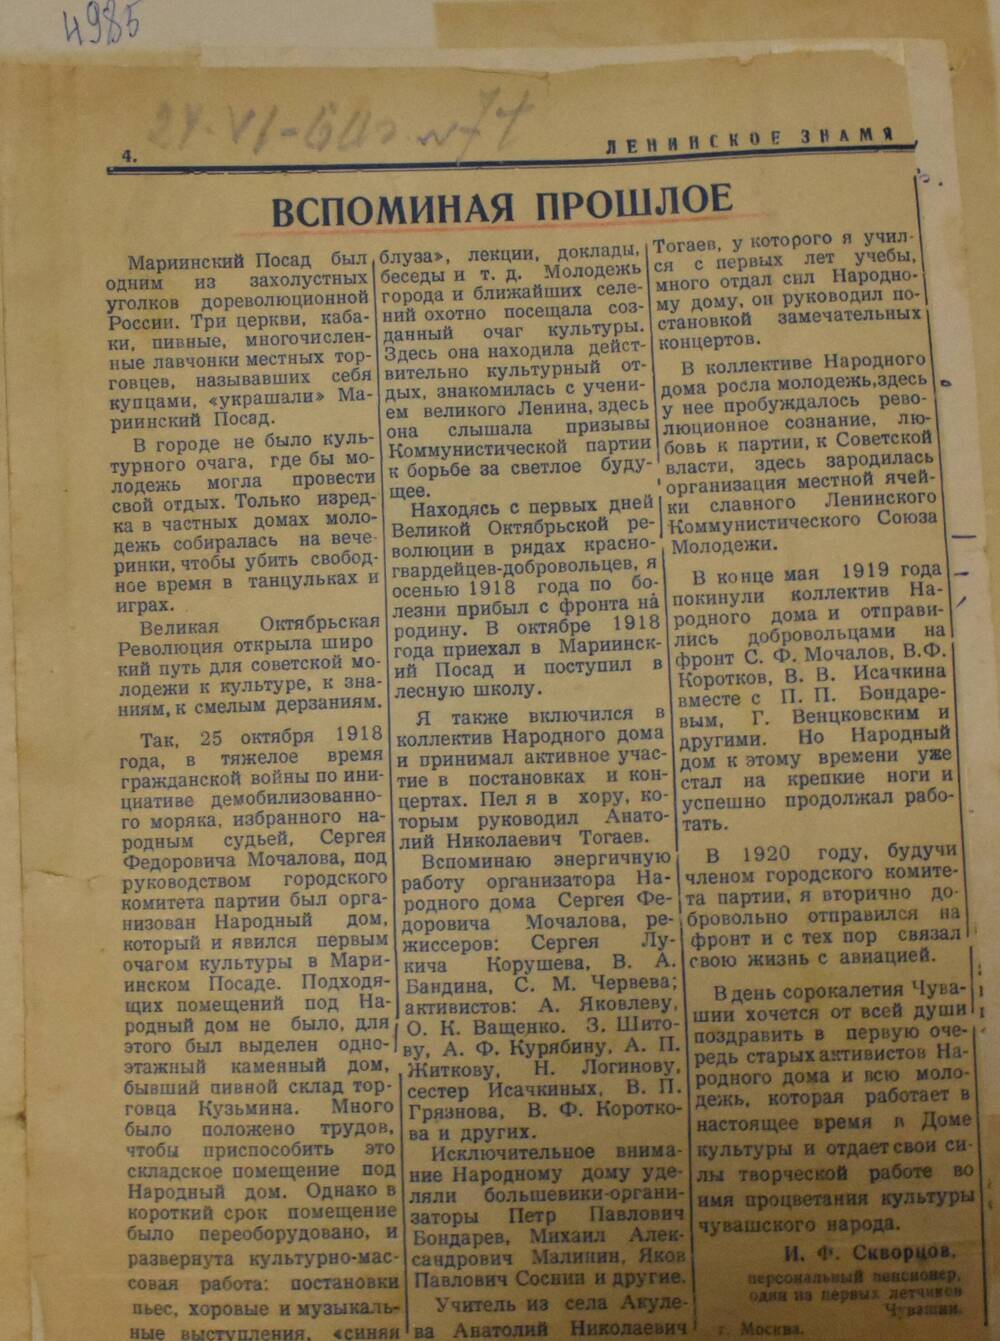 Вырезка из газеты Ленинское знамя № 71 от 24 июня 1960